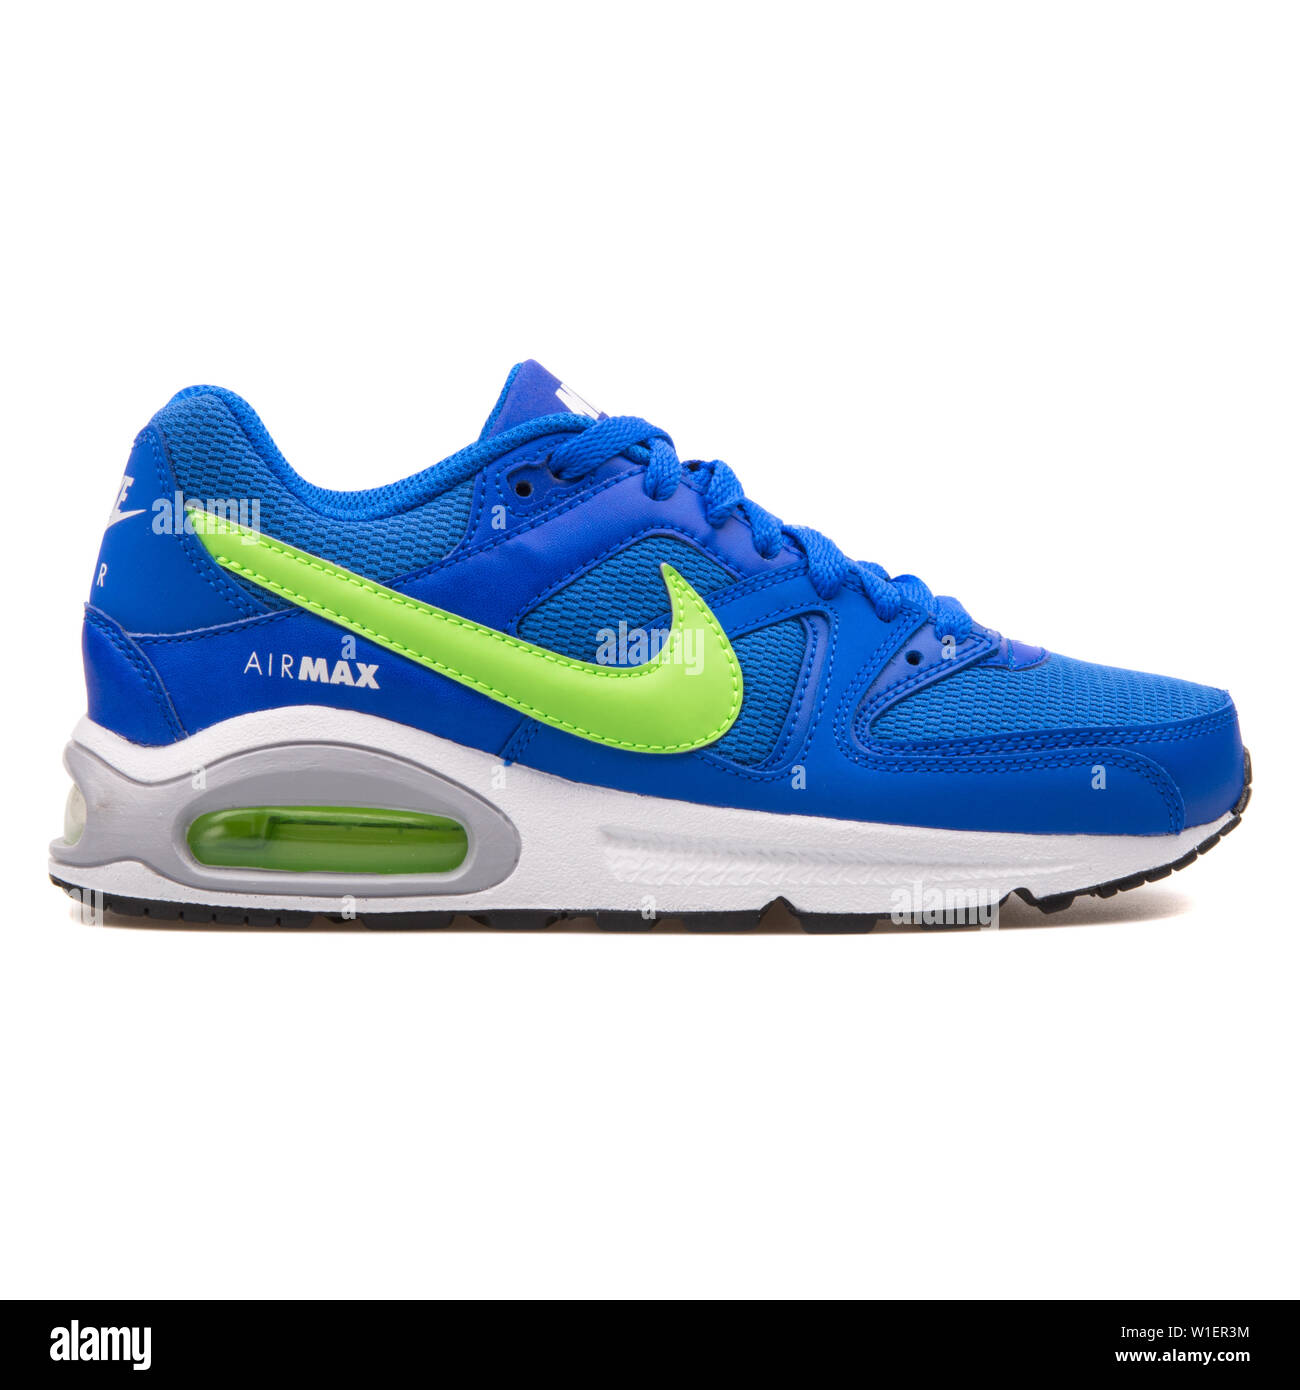 Vienne, Autriche - 10 août 2017 : Nike Air Max Command sneaker bleu et vert  sur fond blanc Photo Stock - Alamy